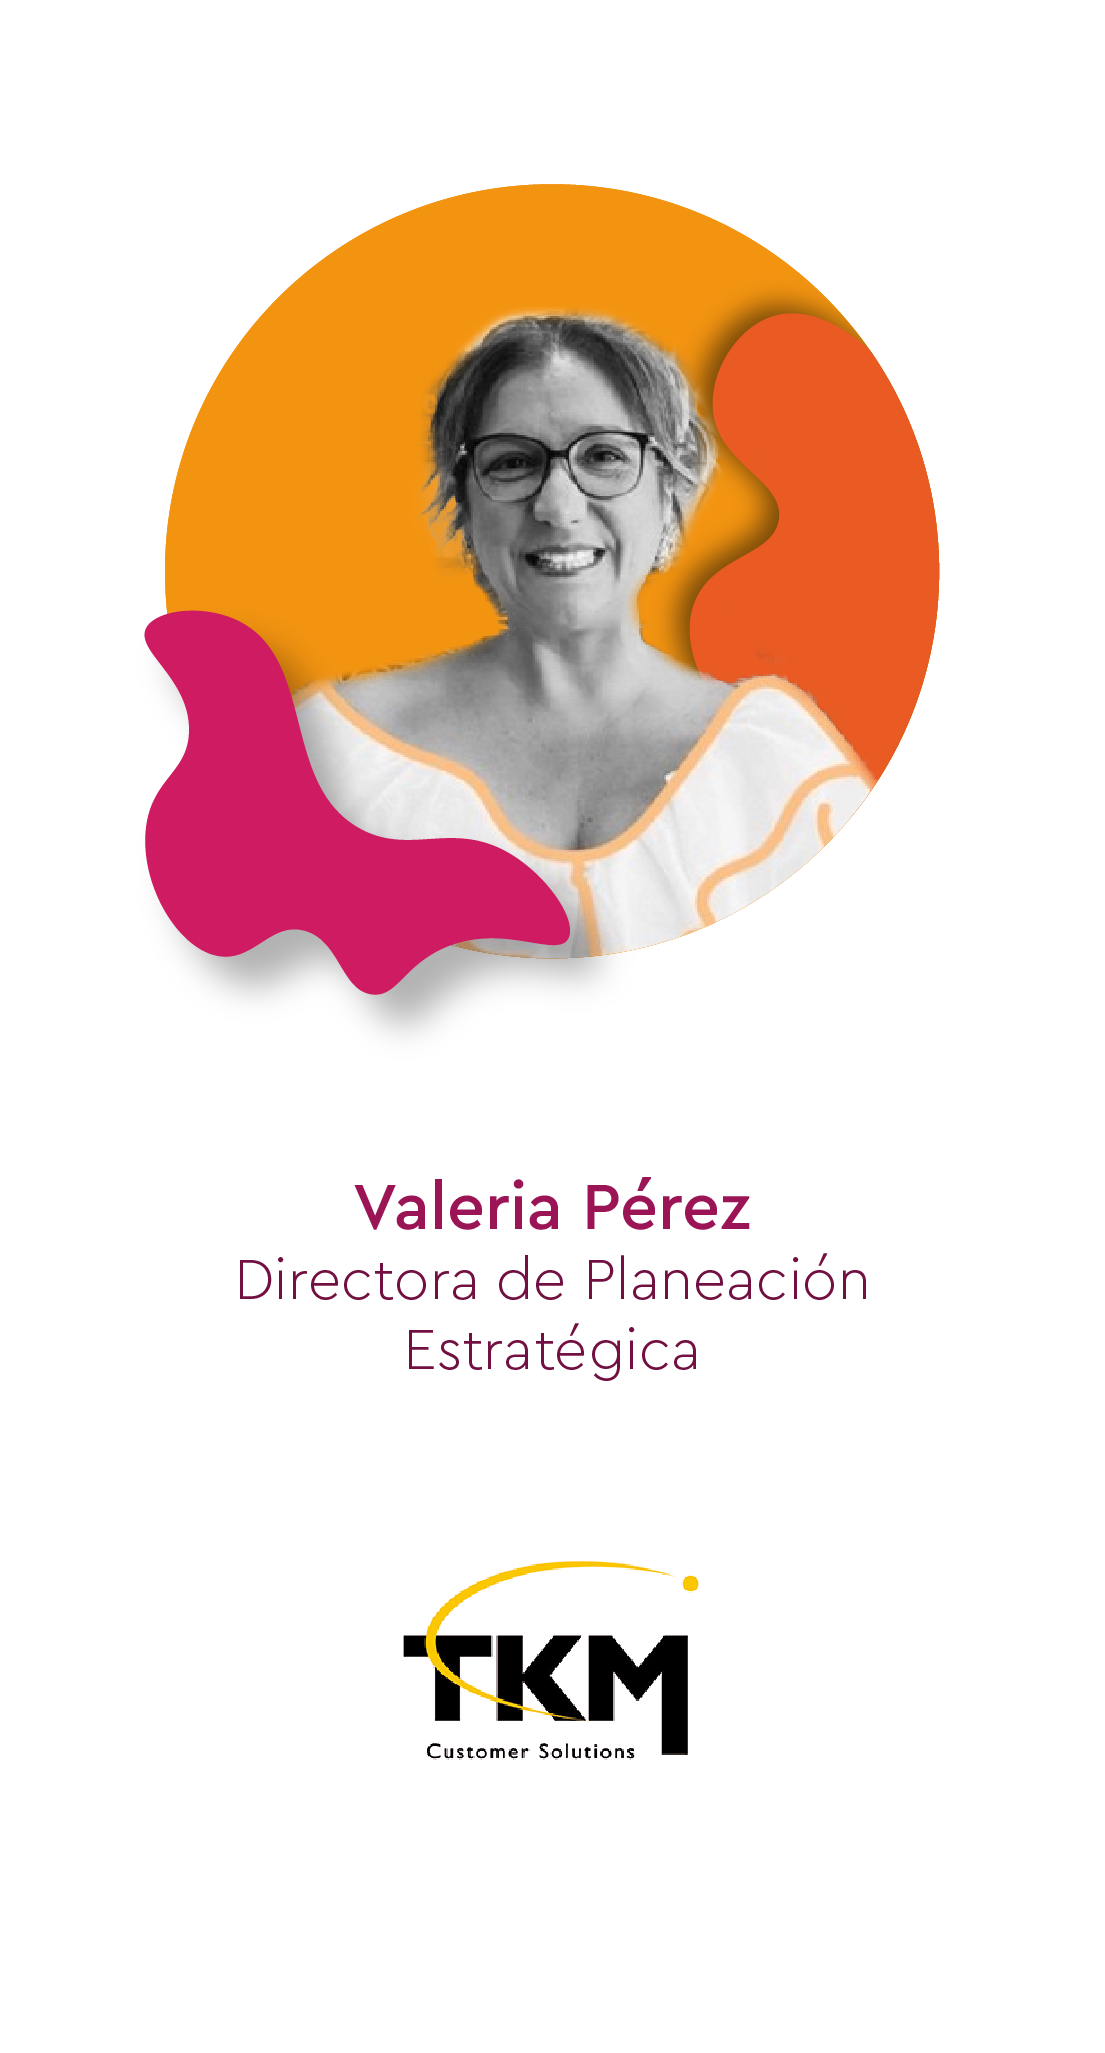 Valeria Pérez